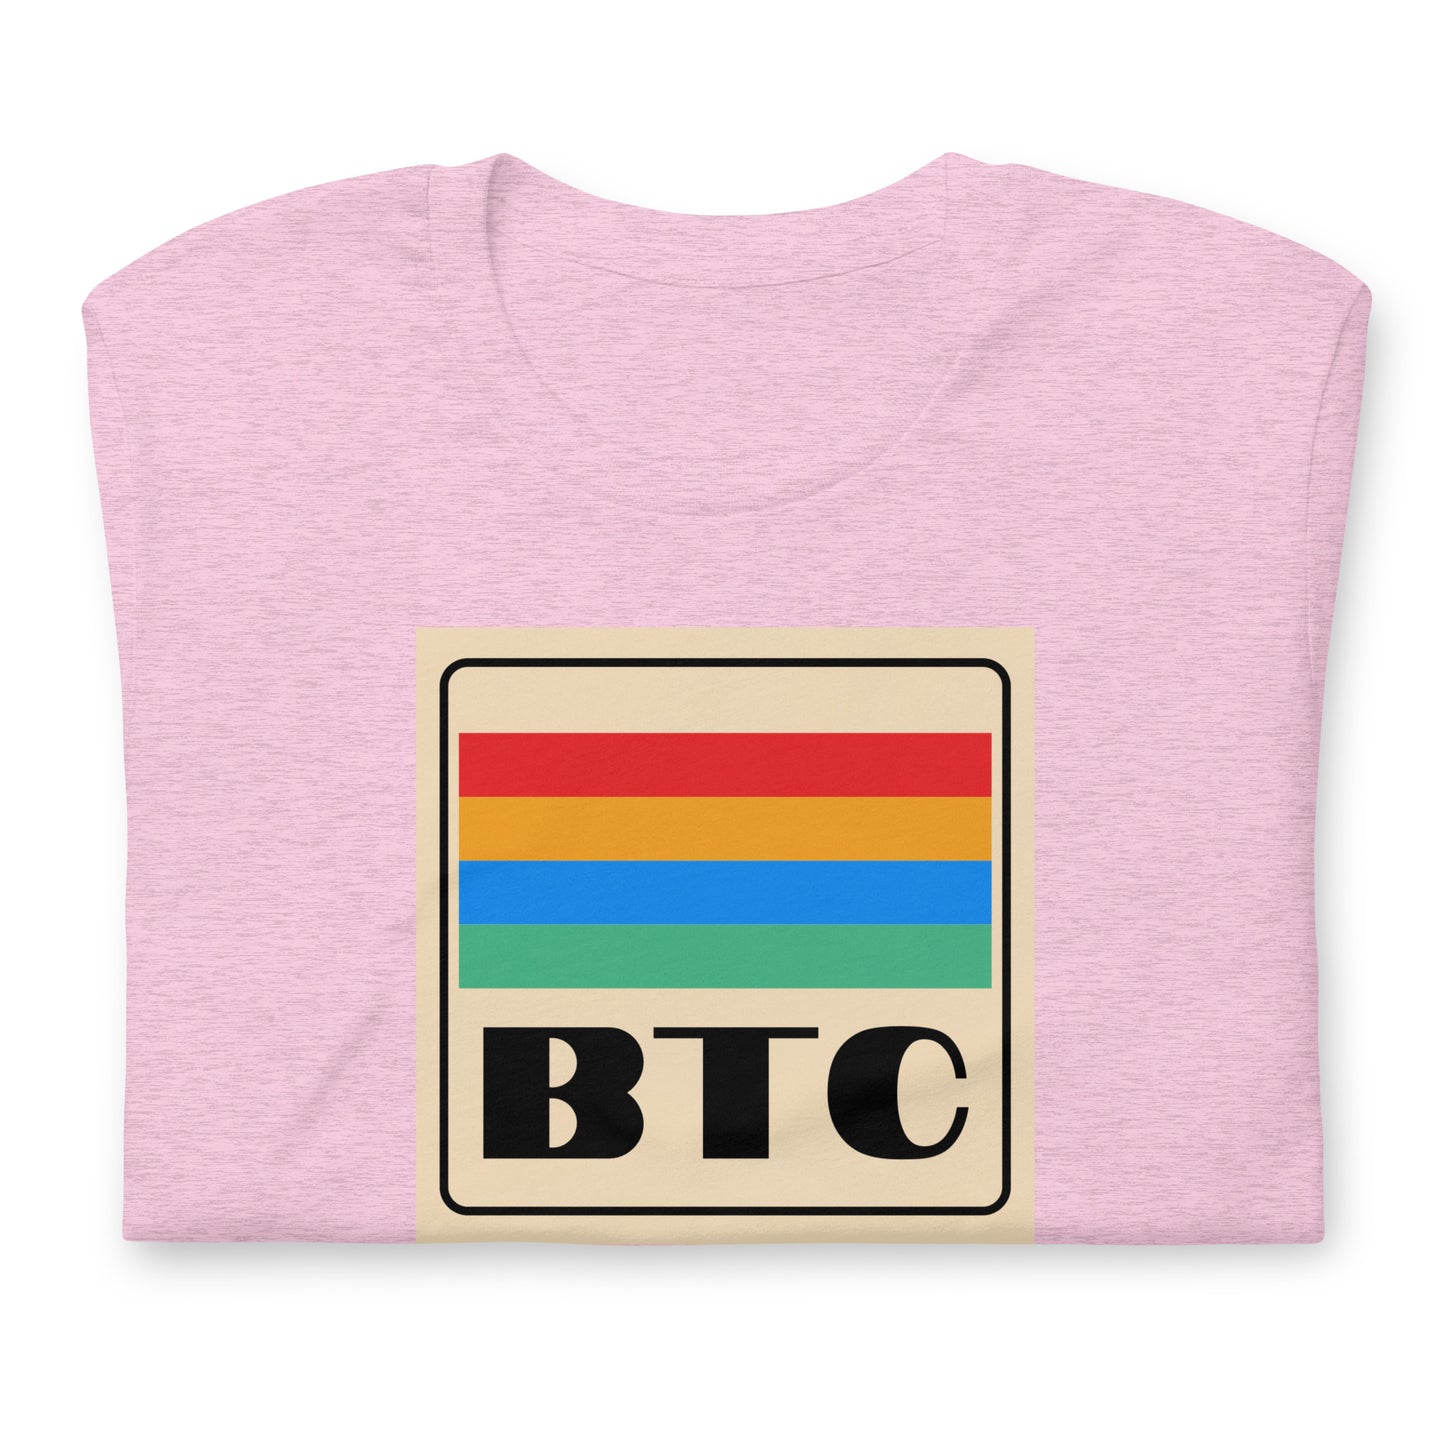 Bitcoin Gaming T-Shirt